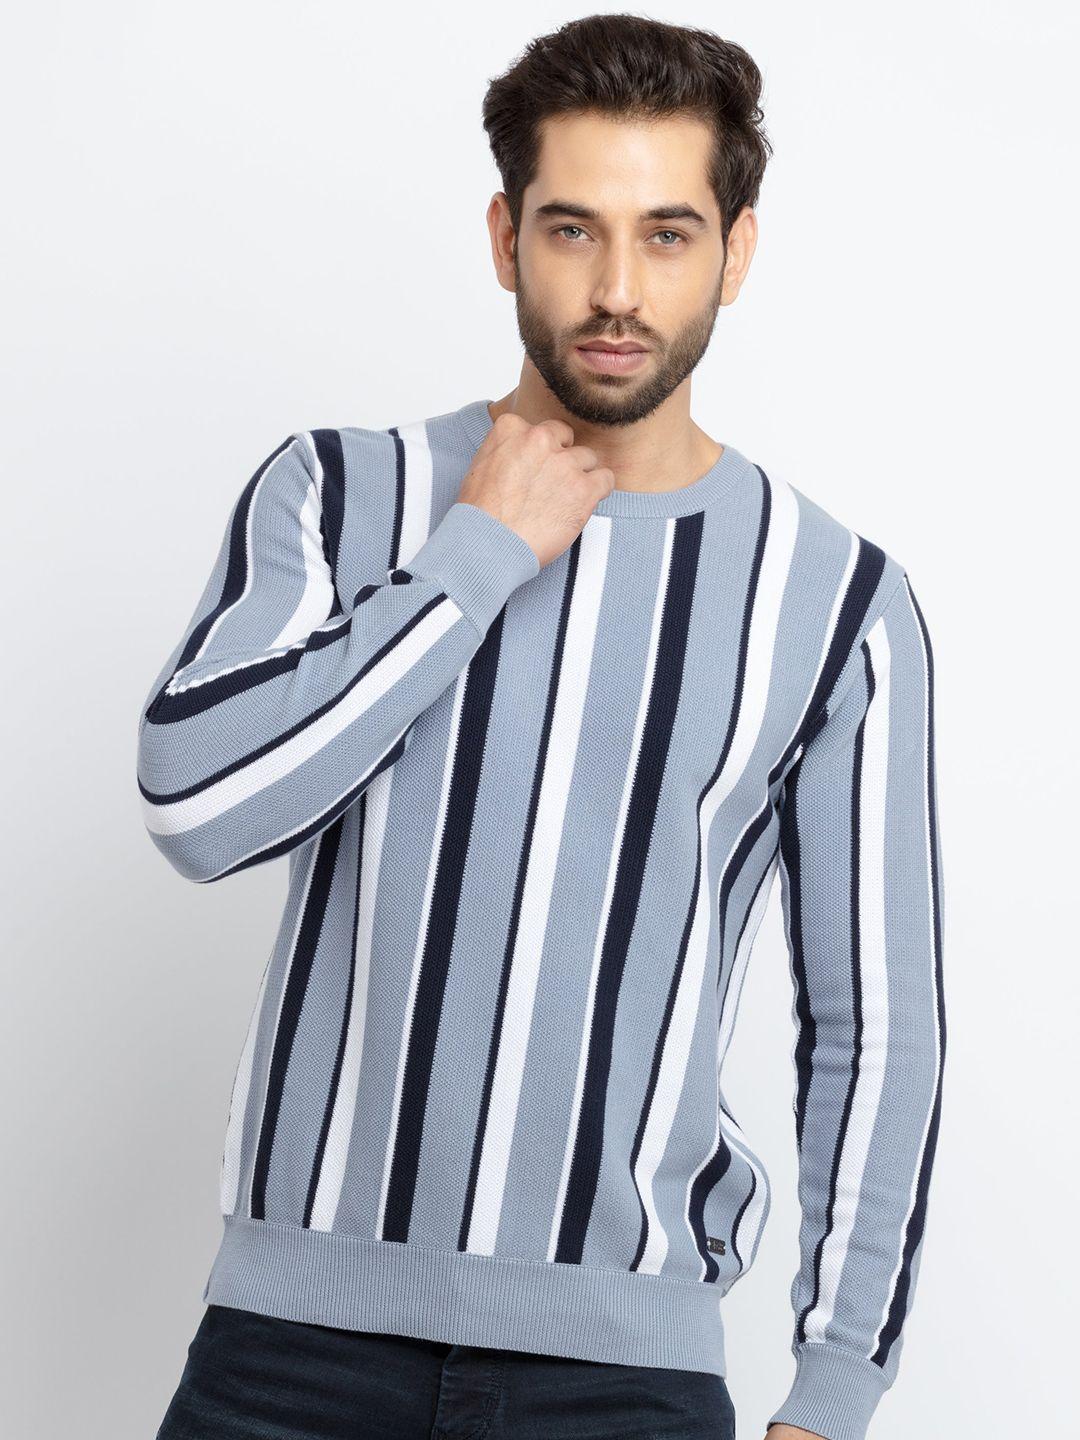 status quo men blue & white striped cotton pullover sweater